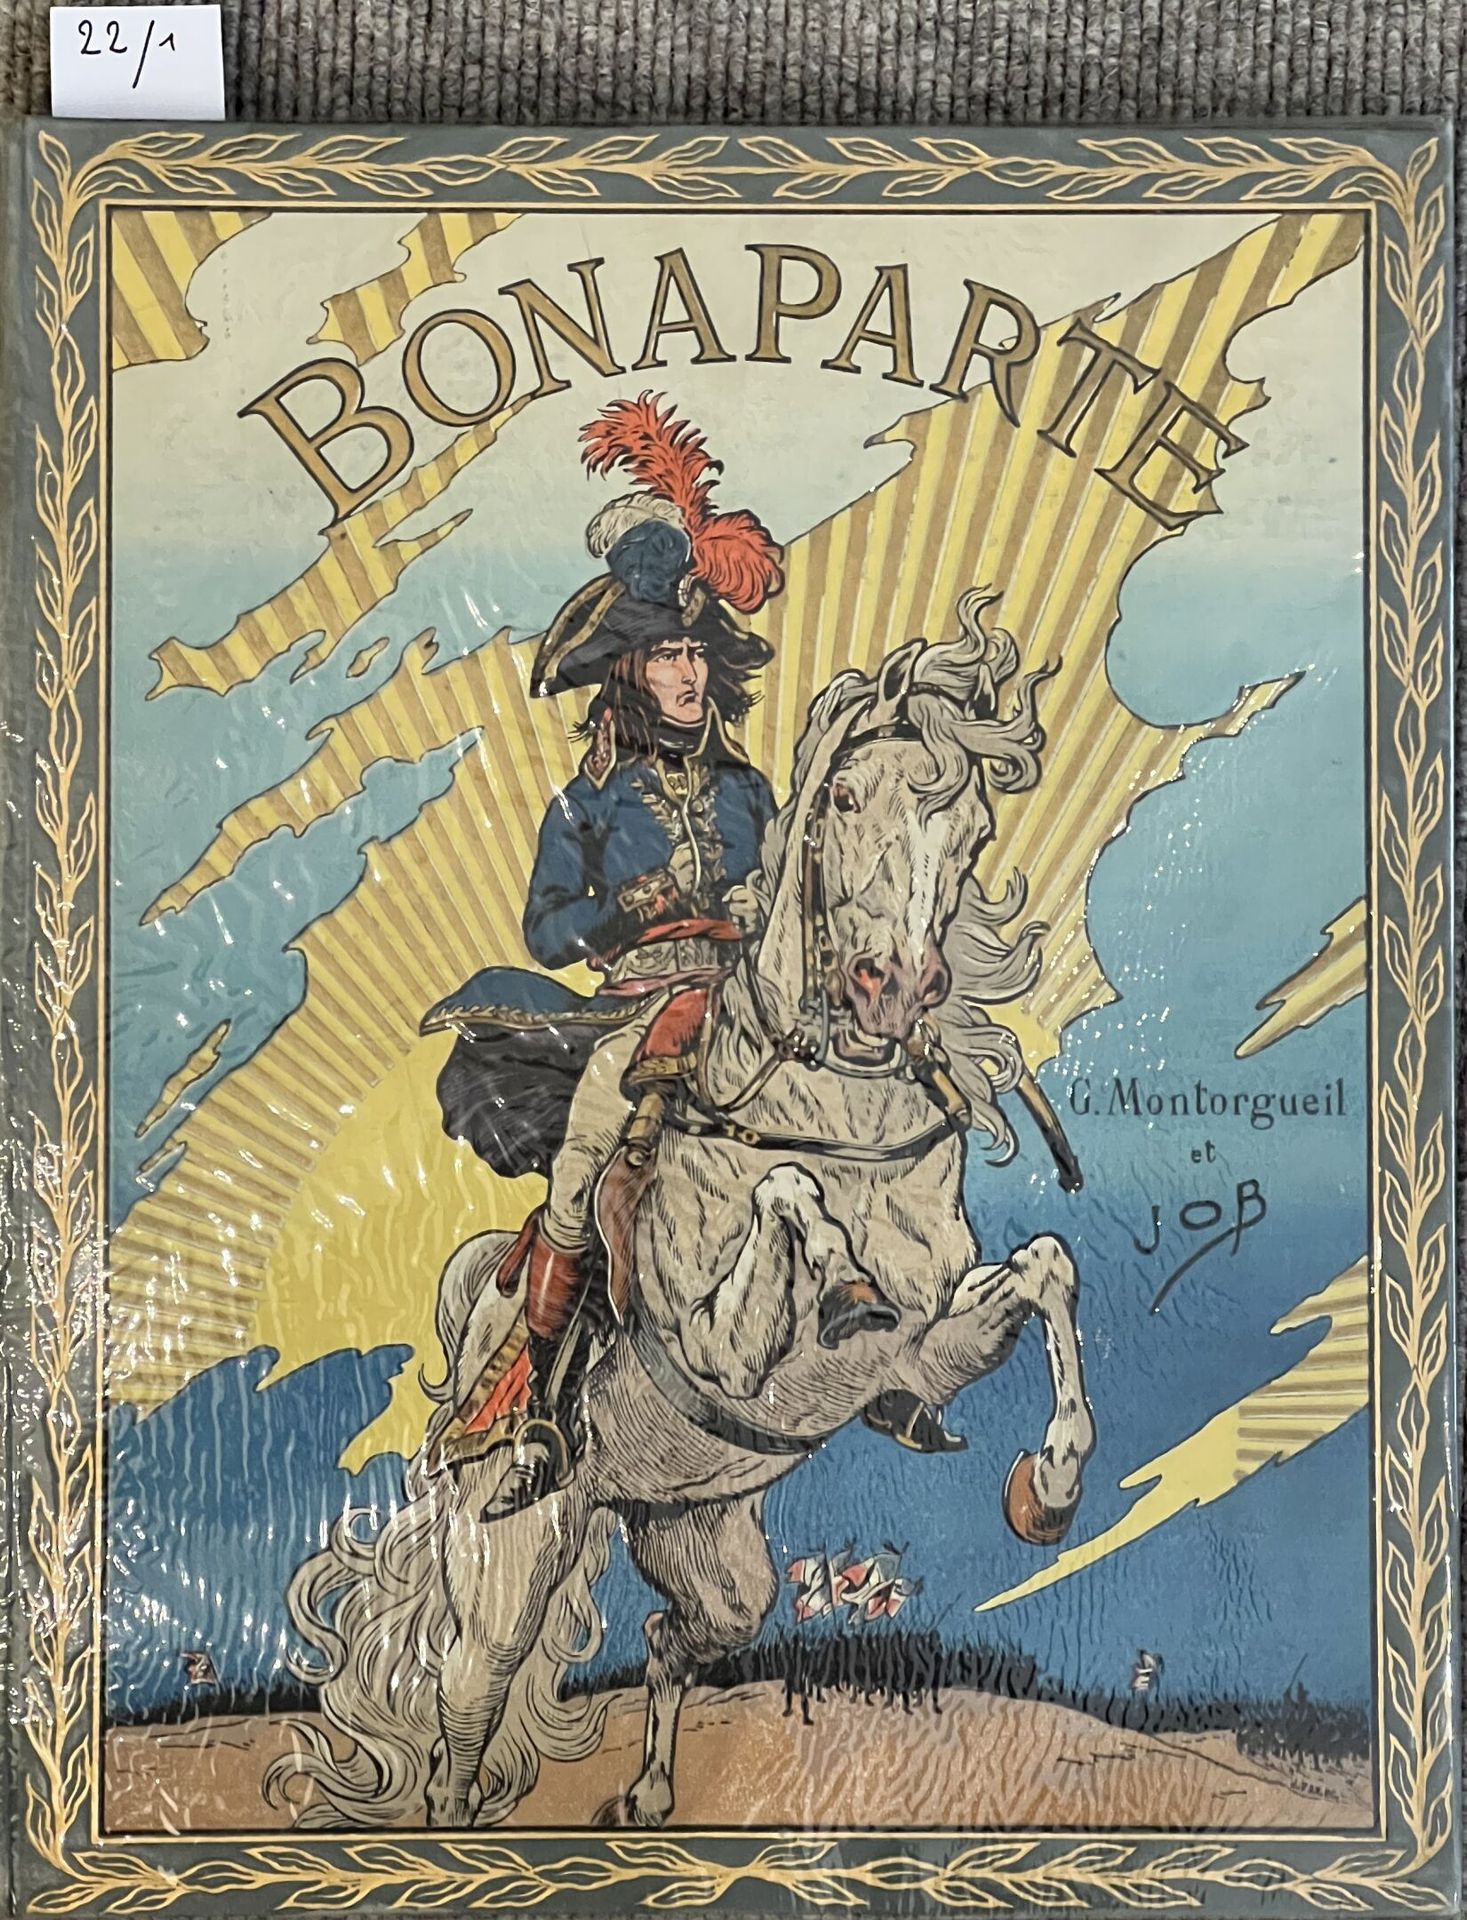 Null Bonaparte
Montorgueuil, ilustración de Job, Boivin & Cie, 1910